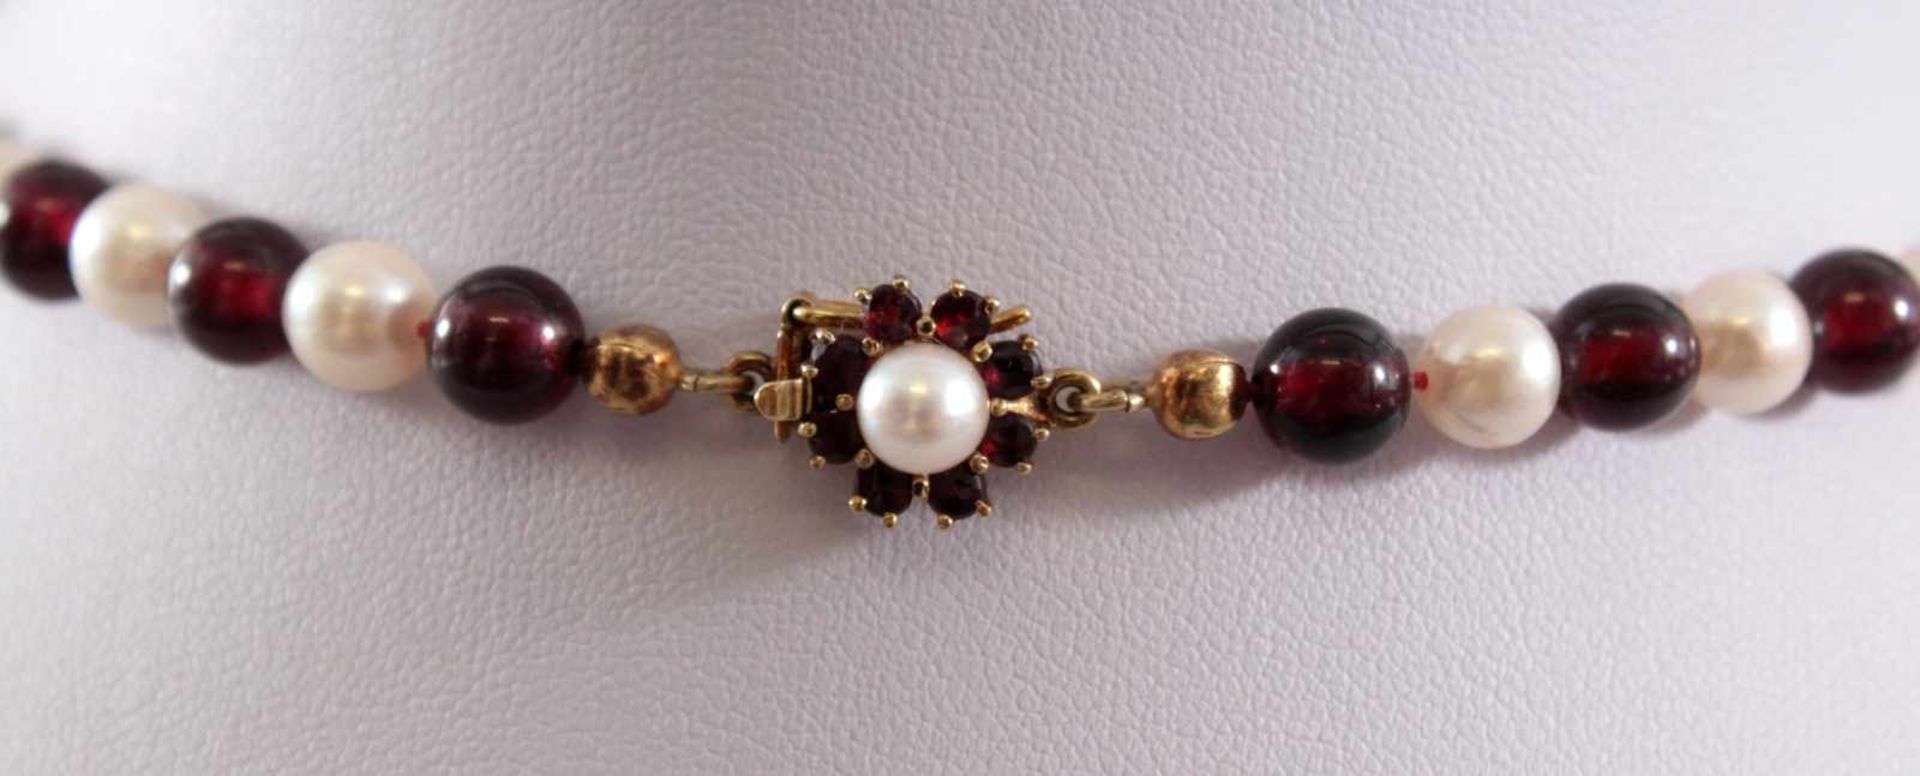 Perlen-/Granat-KetteKette aus Perlen, im Wechsel mit Granaten, an floraler Schließe (333 GG) besetzt - Image 3 of 4